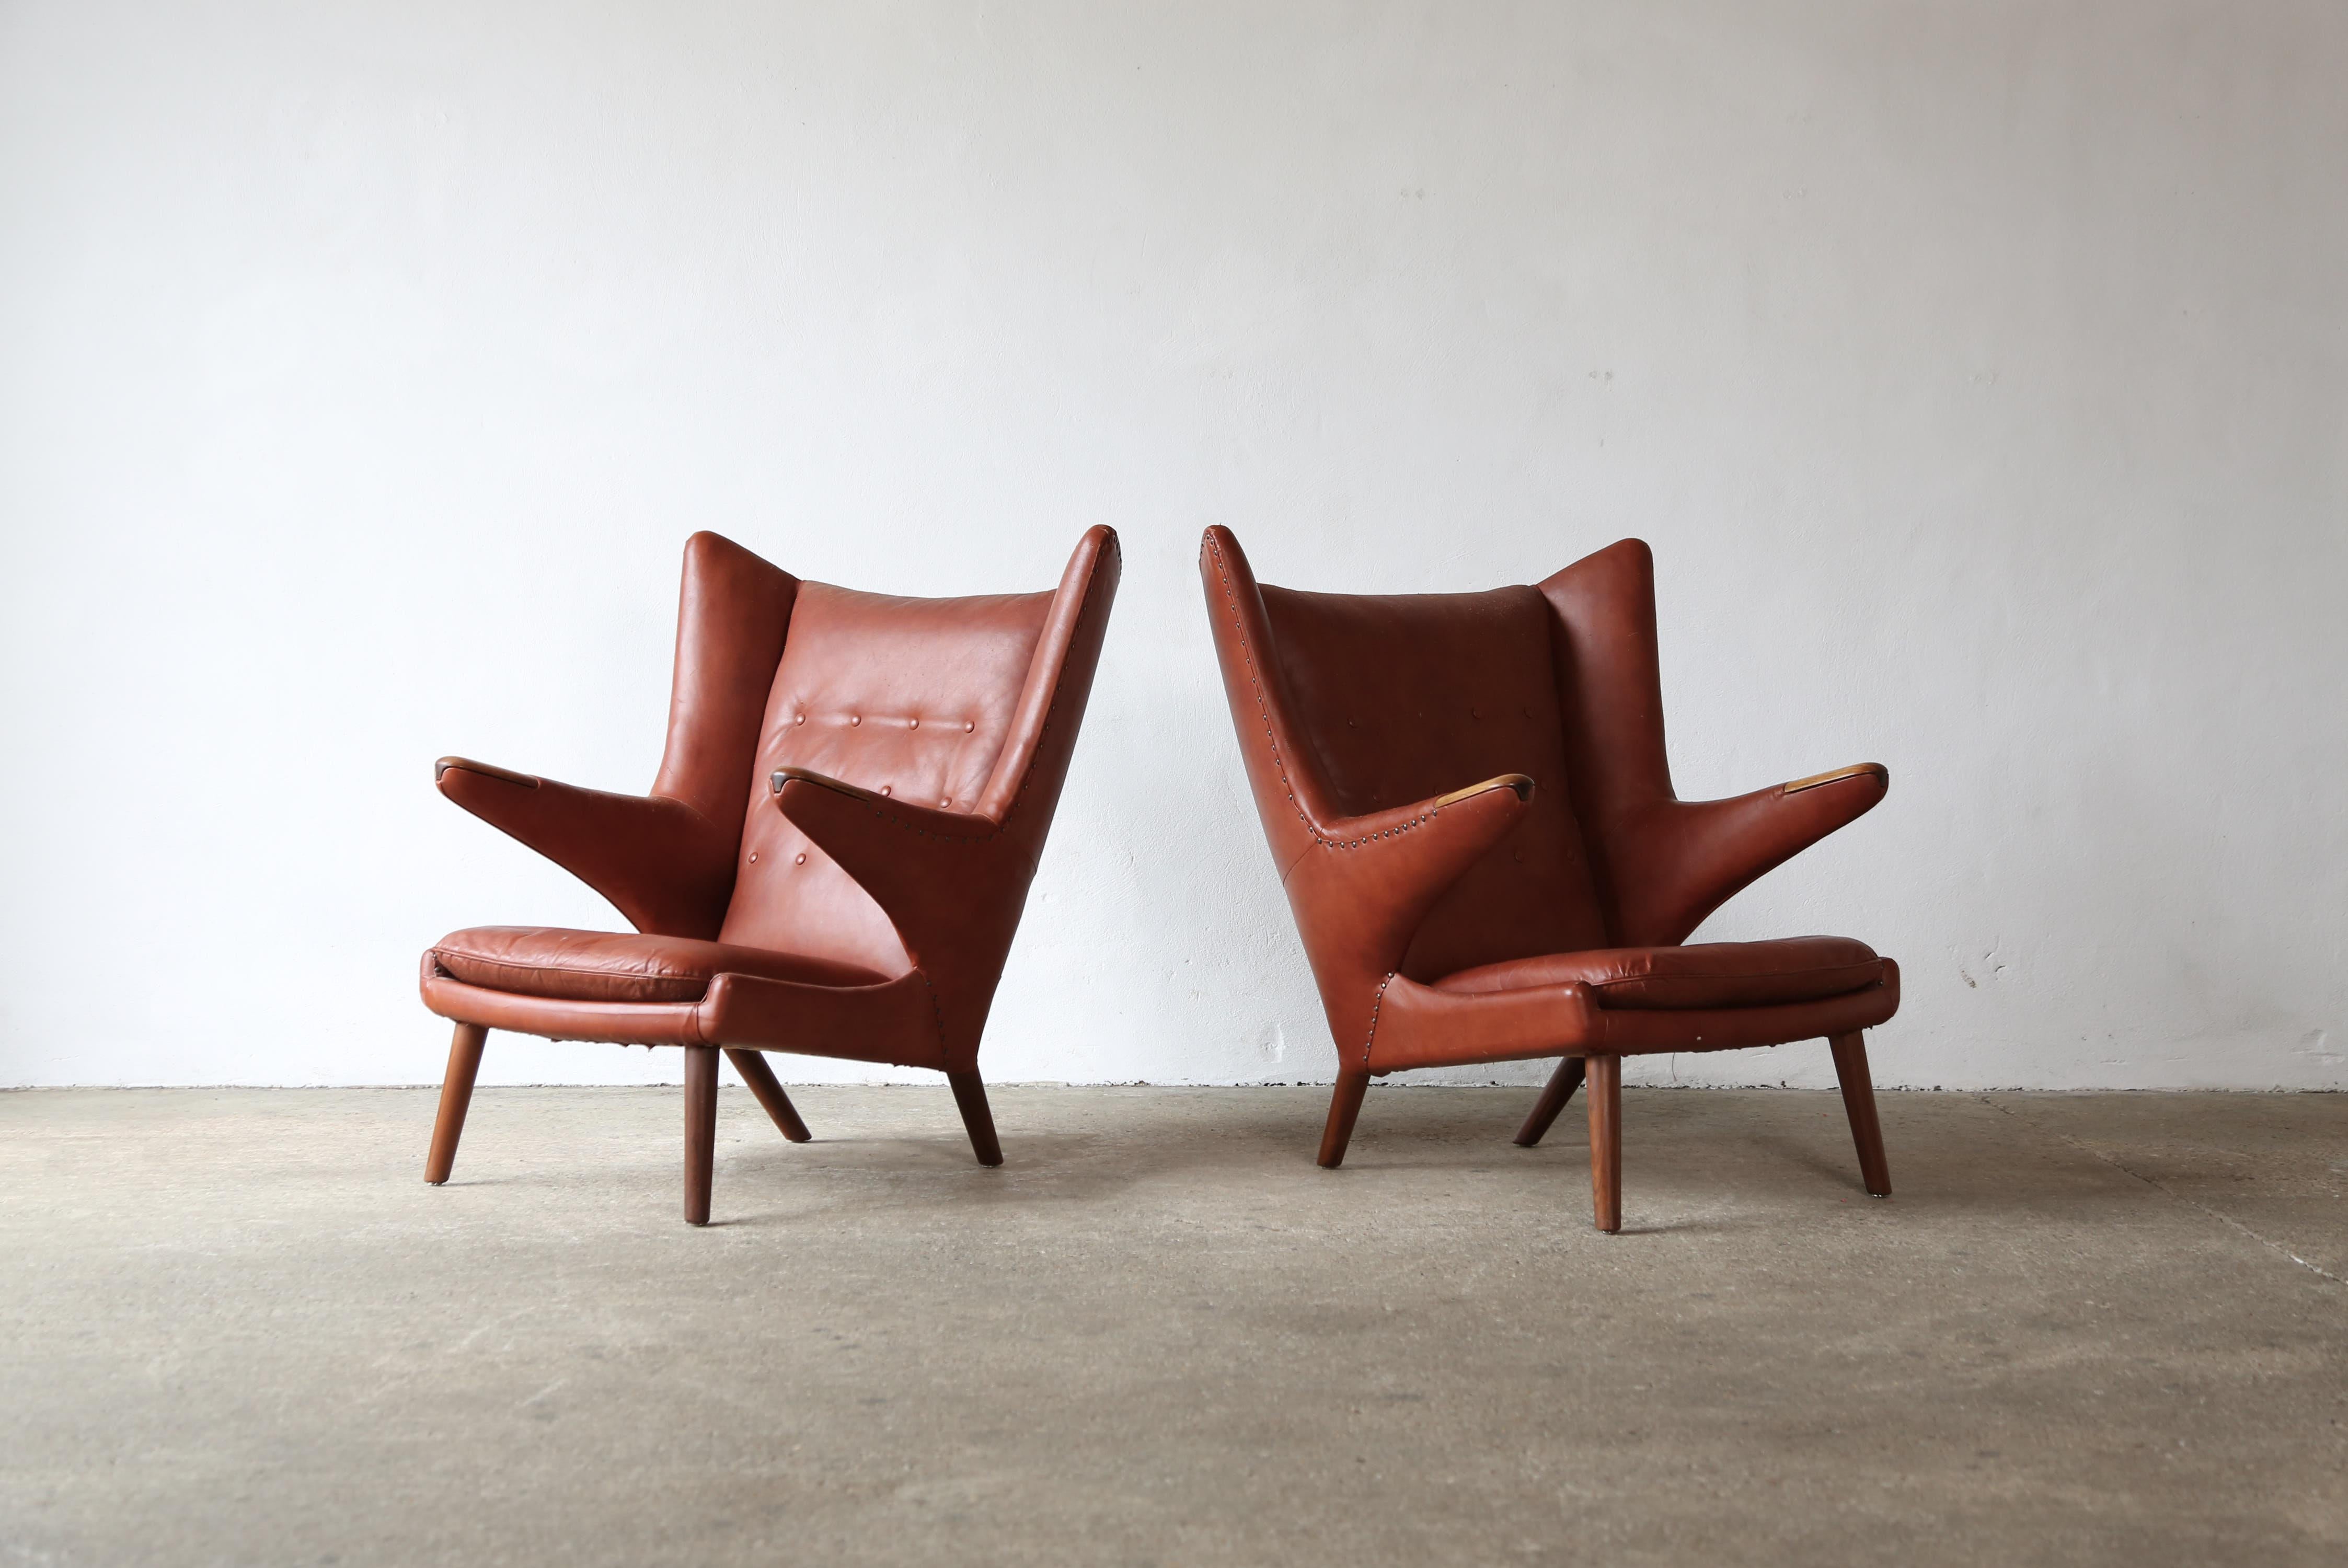 Ein seltenes Paar originaler Papa-Bär-Stühle von Hans Wegner aus dem Jahr 1947, die in den 1950er Jahren von AP Stolen in Dänemark hergestellt wurden. Der Stoff weist übermäßige Abnutzungserscheinungen auf, so dass diese in ihrem derzeitigen